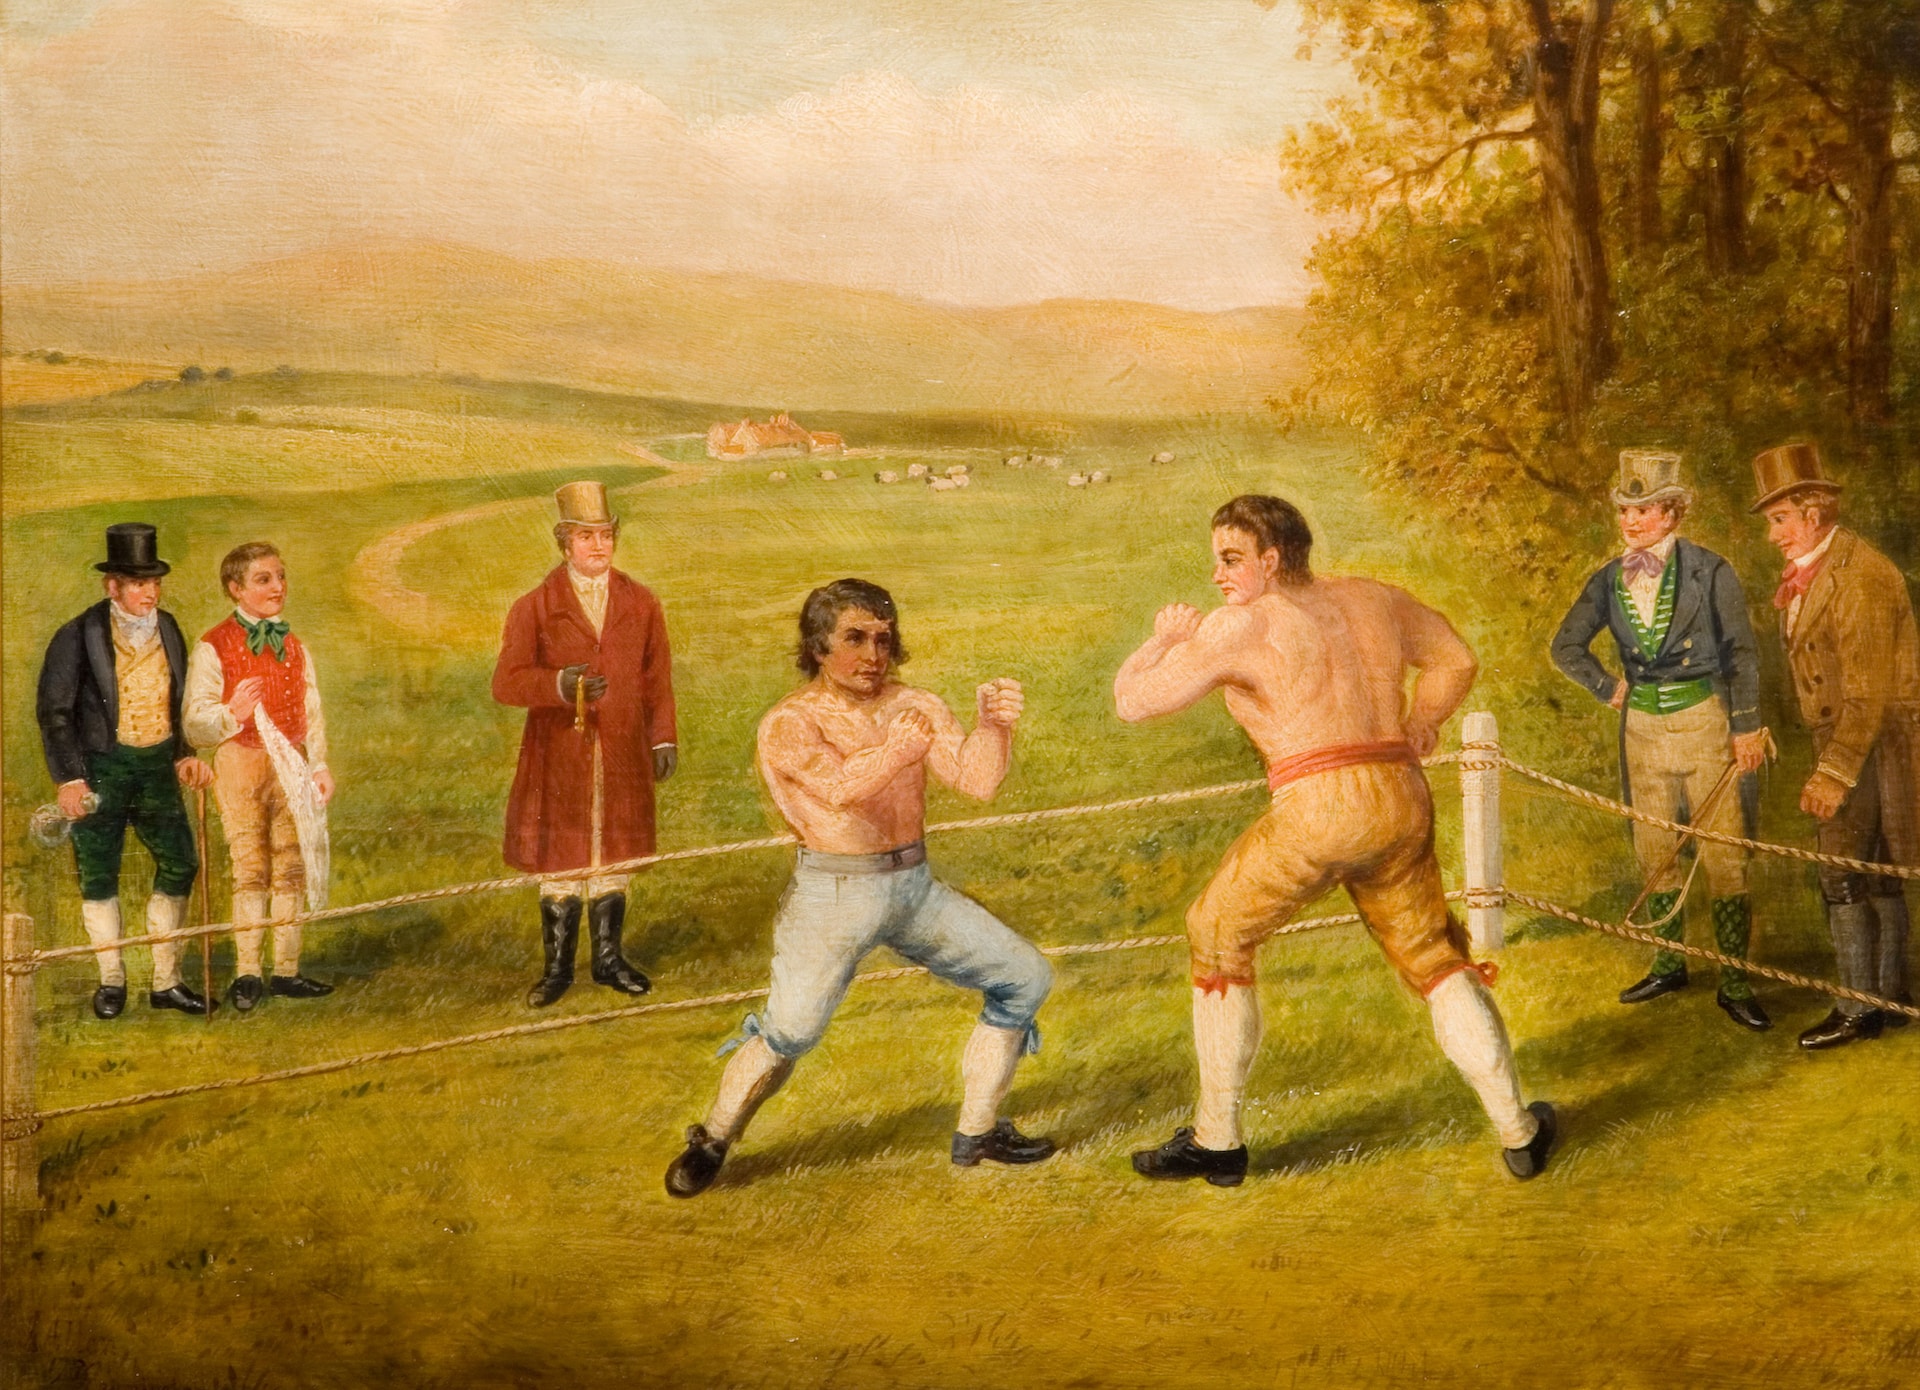 Une représentation d'un combat de boxe clandestin avec des nobles autour.